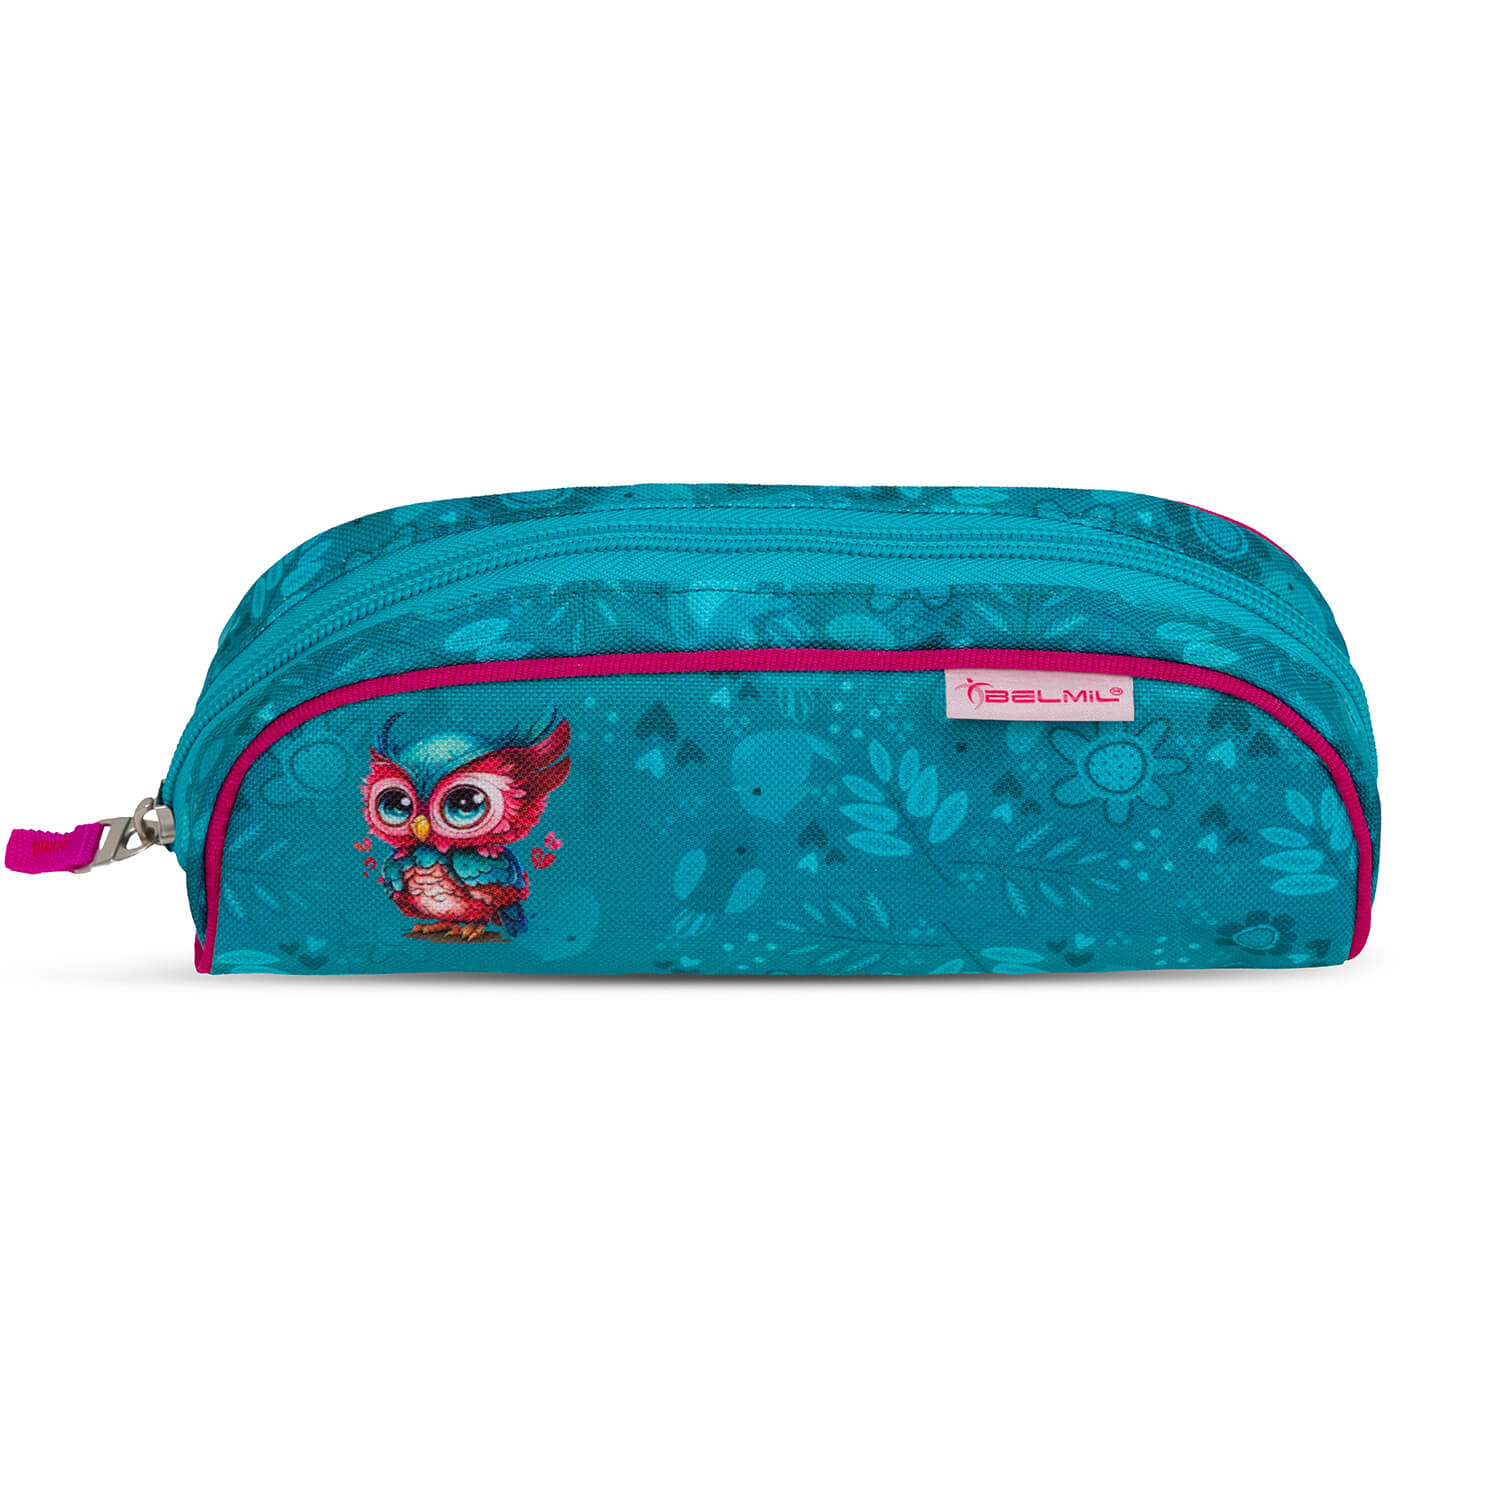 Classy Cute Owl schoolbag set 4 pcs